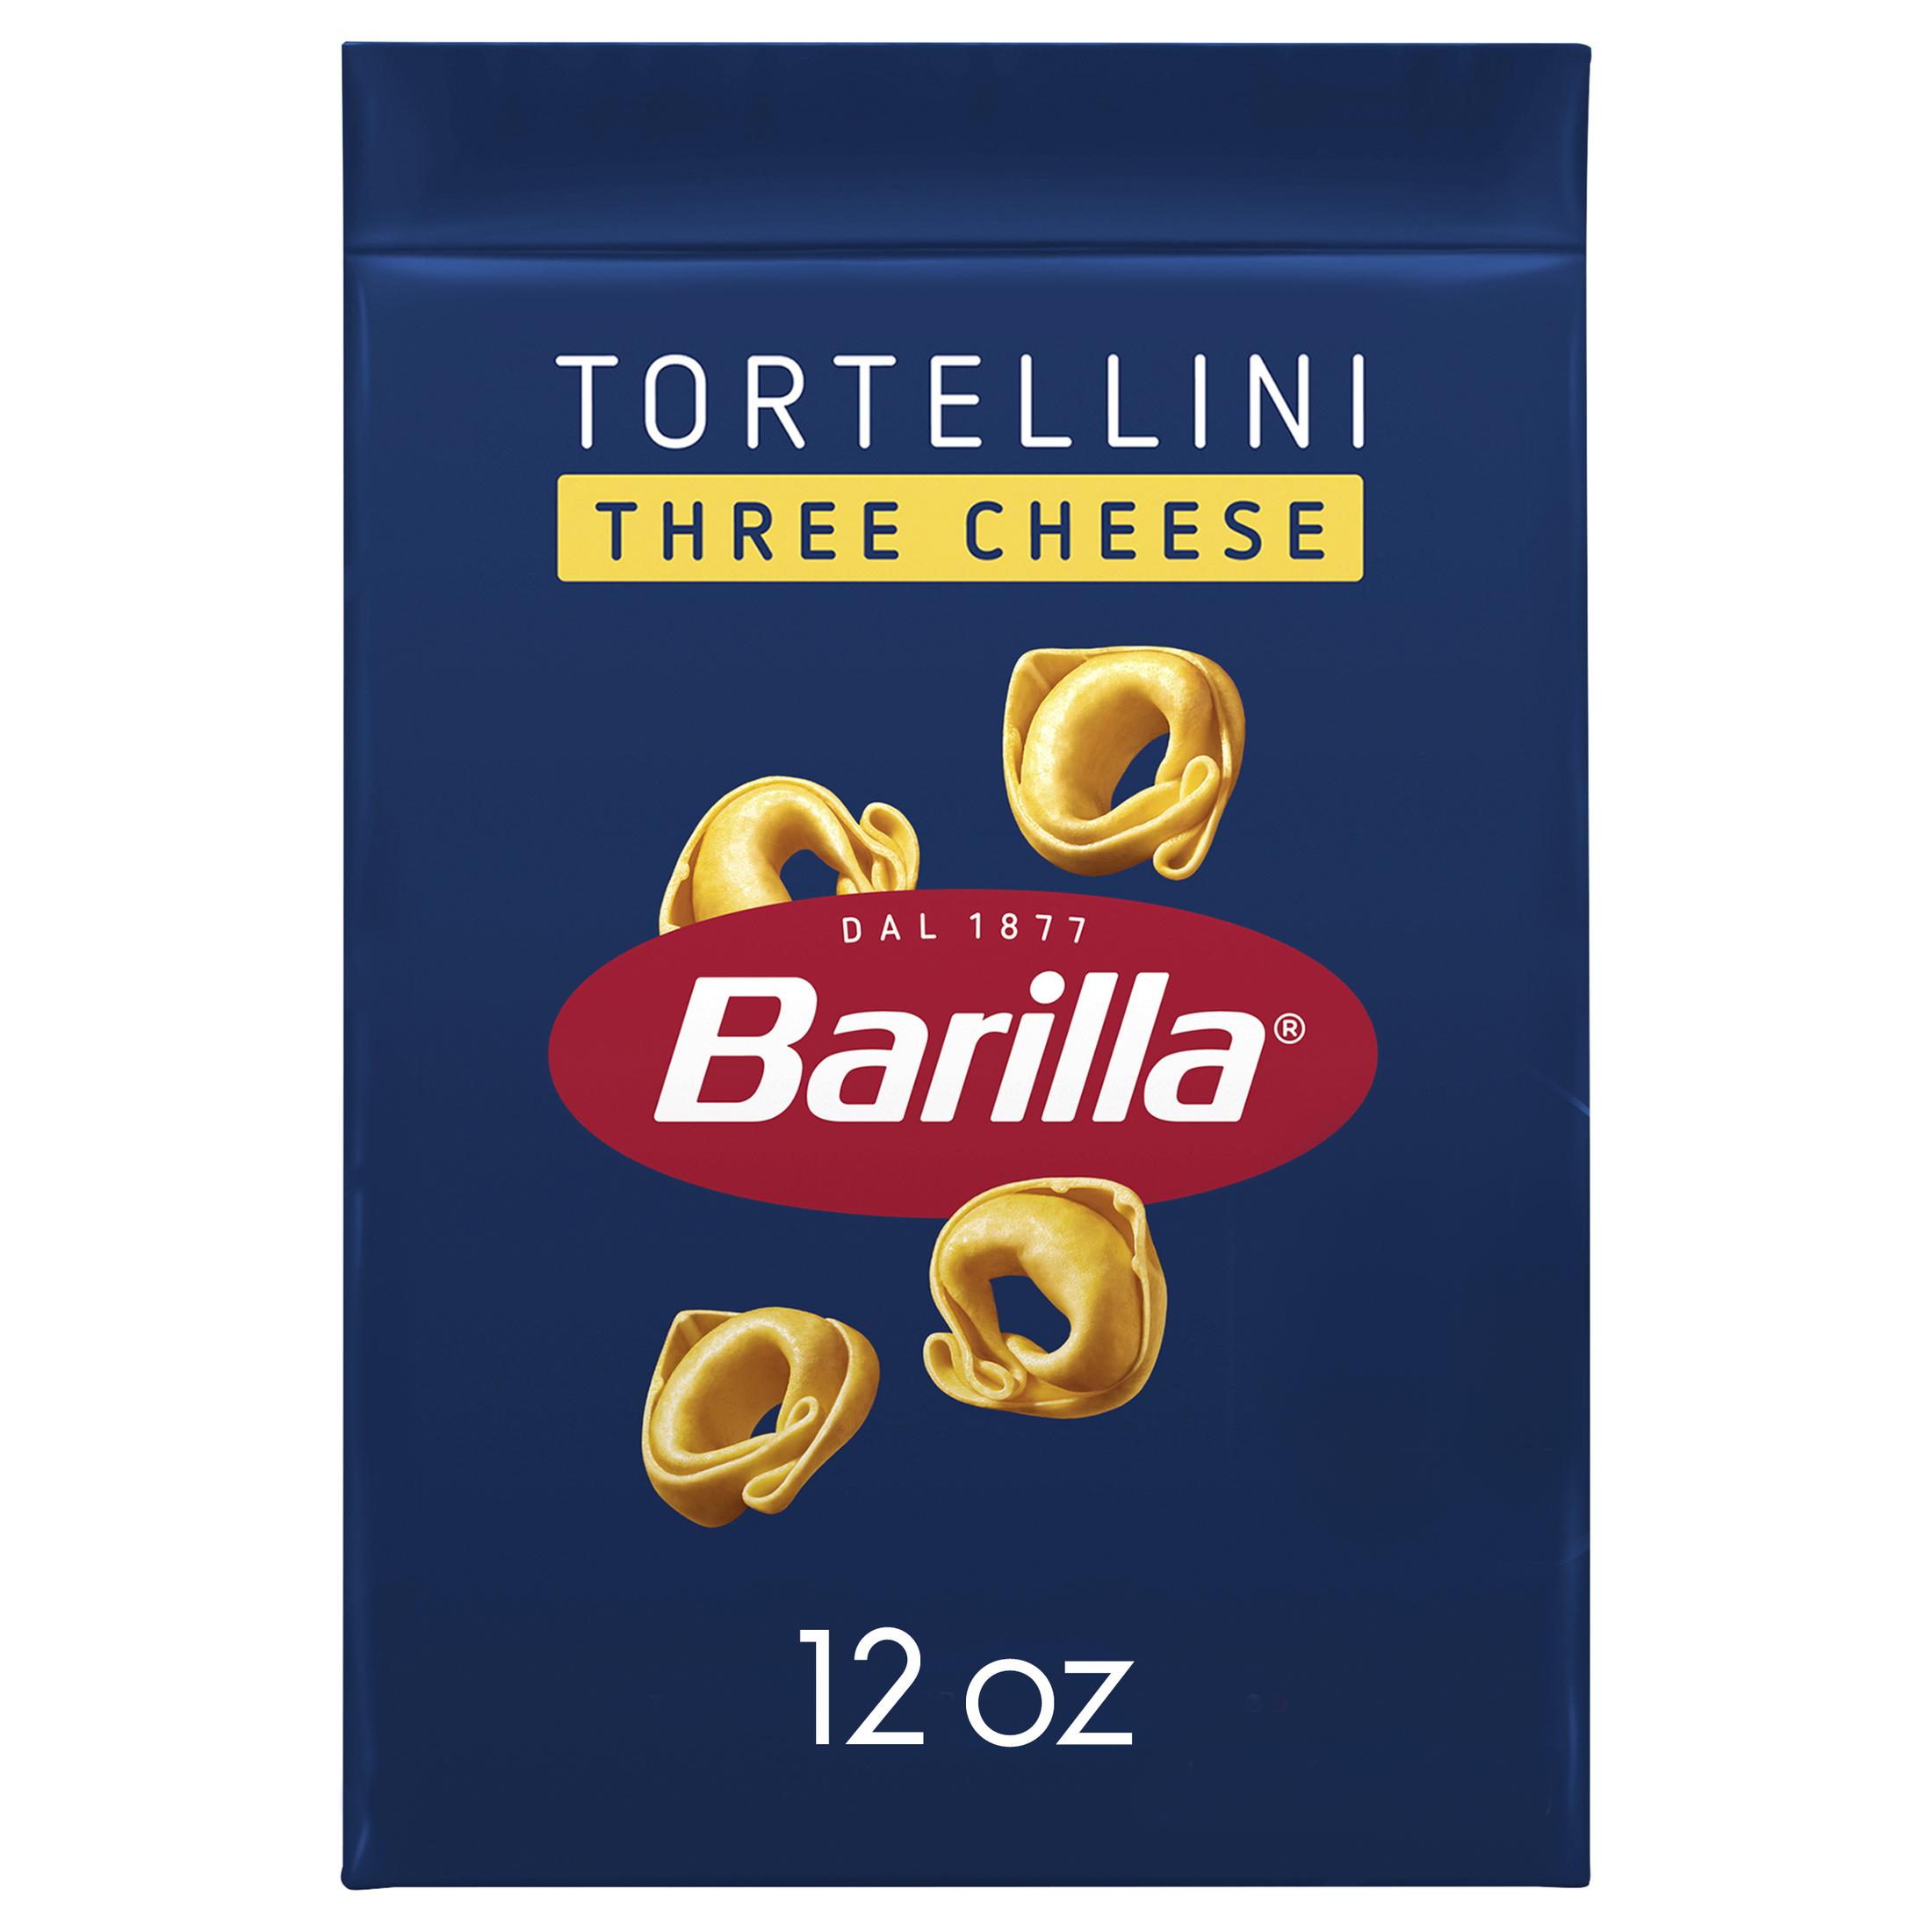 Barilla Classic Non-GMO, Filled Three Cheese Tortellini Pasta, 12 oz - image 1 of 8